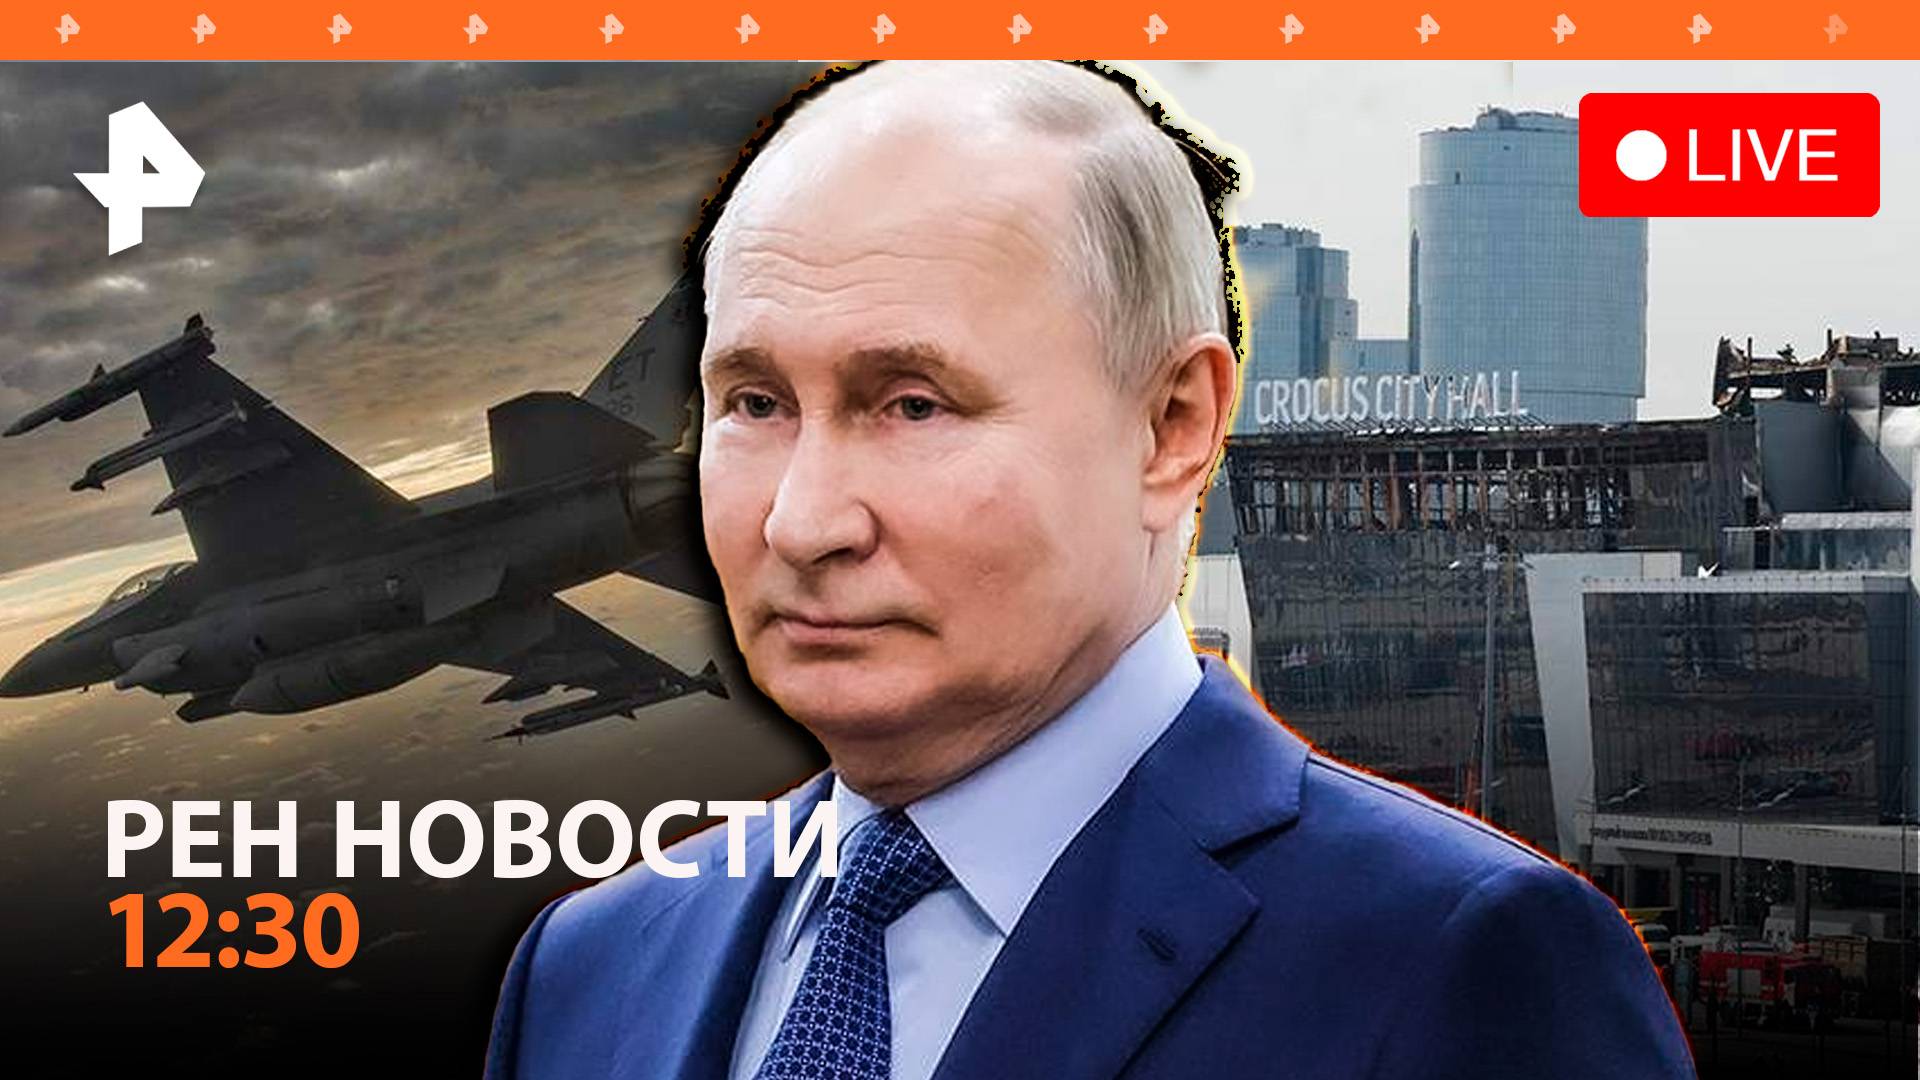 Число погибших в "Крокусе" выросло до 143 / Путин — о судьбе F-16 на СВО / РЕН Новости 28.03, 12:30